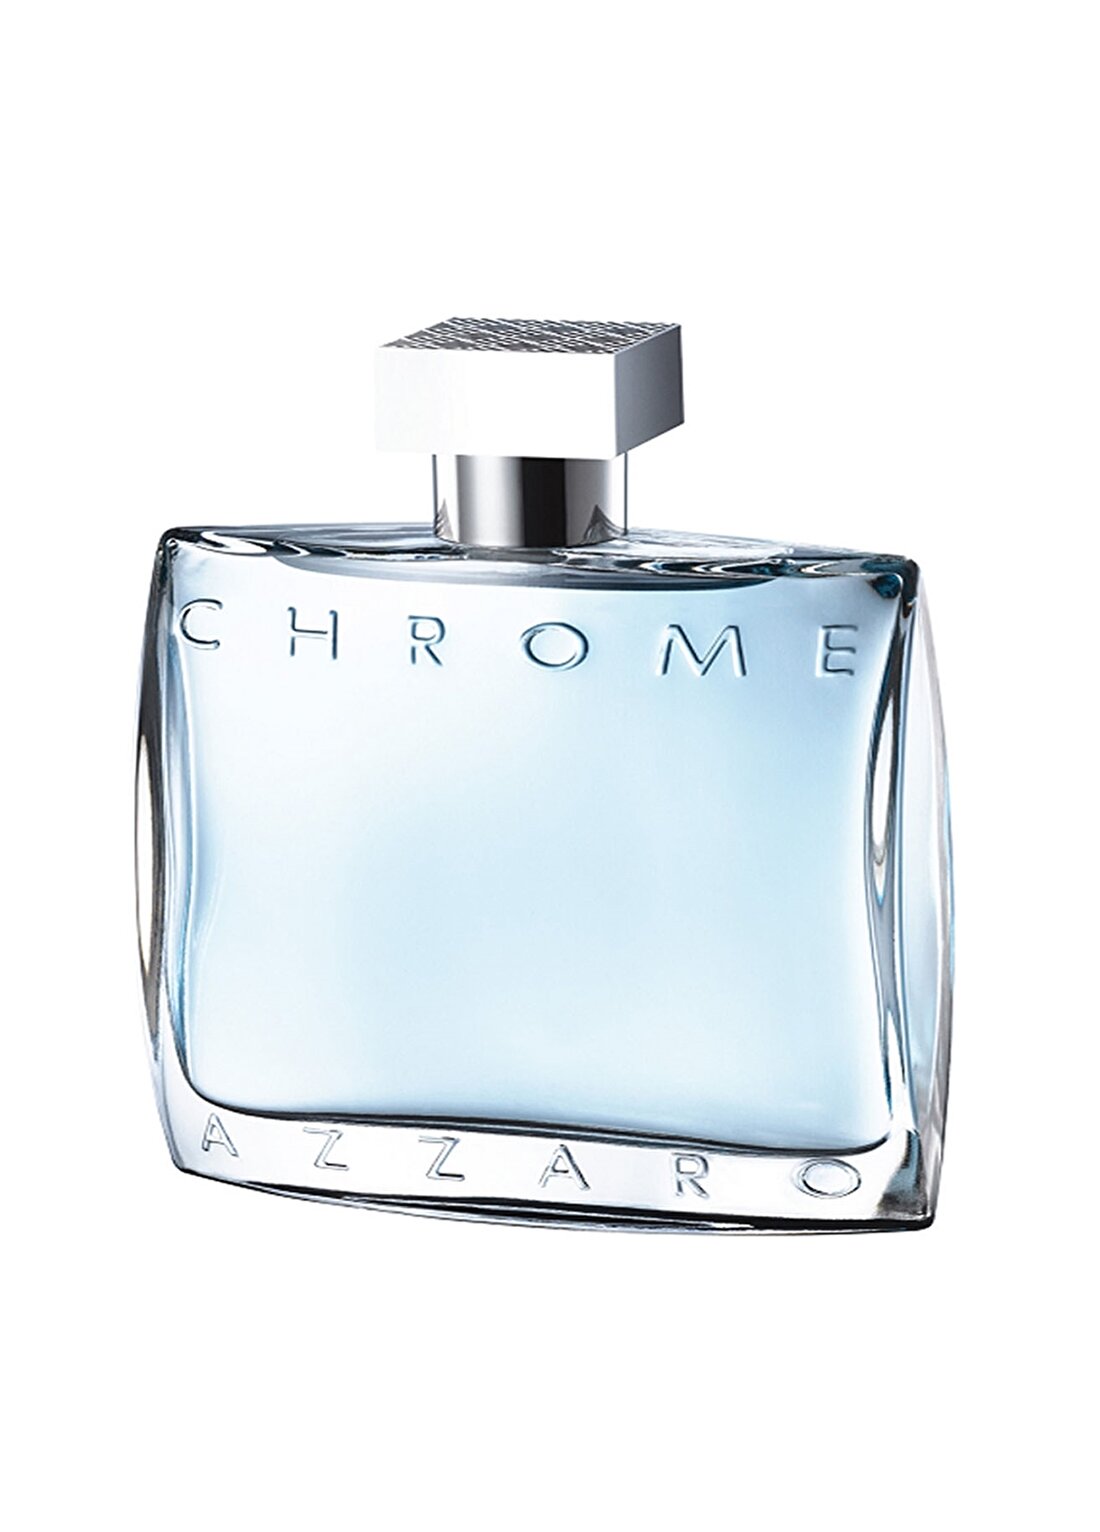 Azzaro Chrome Edt 100 Ml Erkek Parfüm